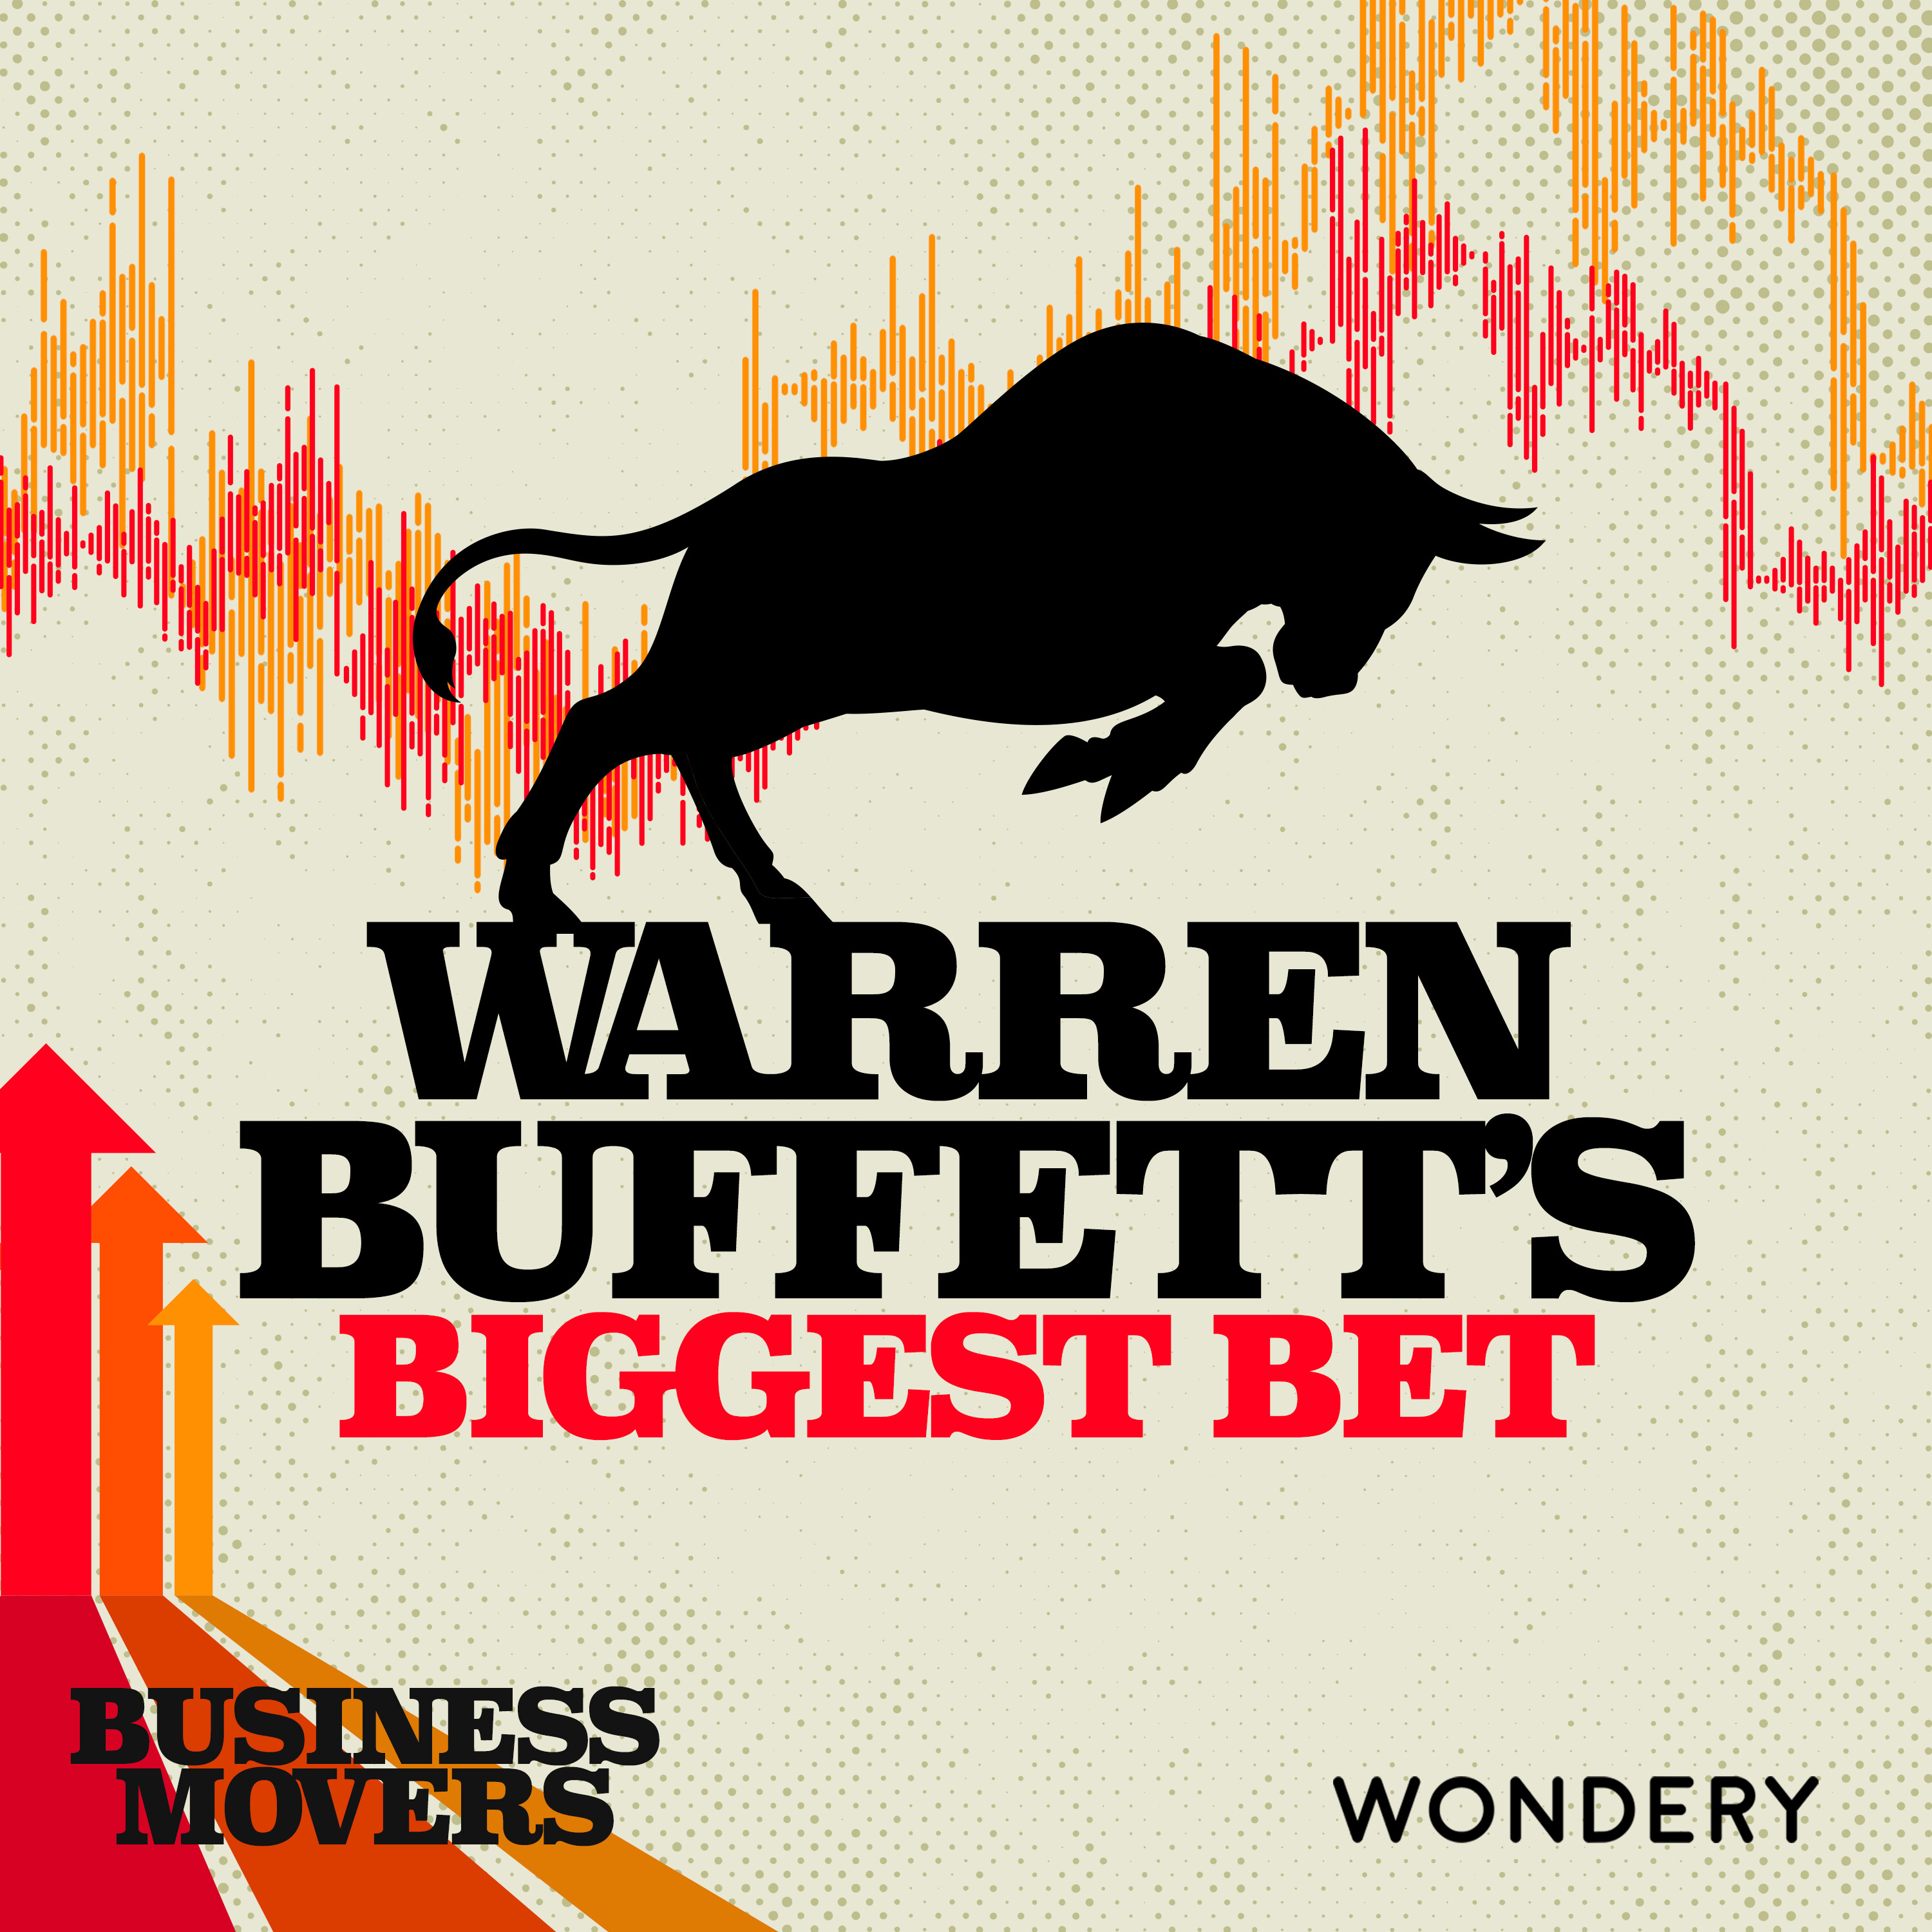 Warren Buffett’s Biggest Bet | The Buffett Brand | 4